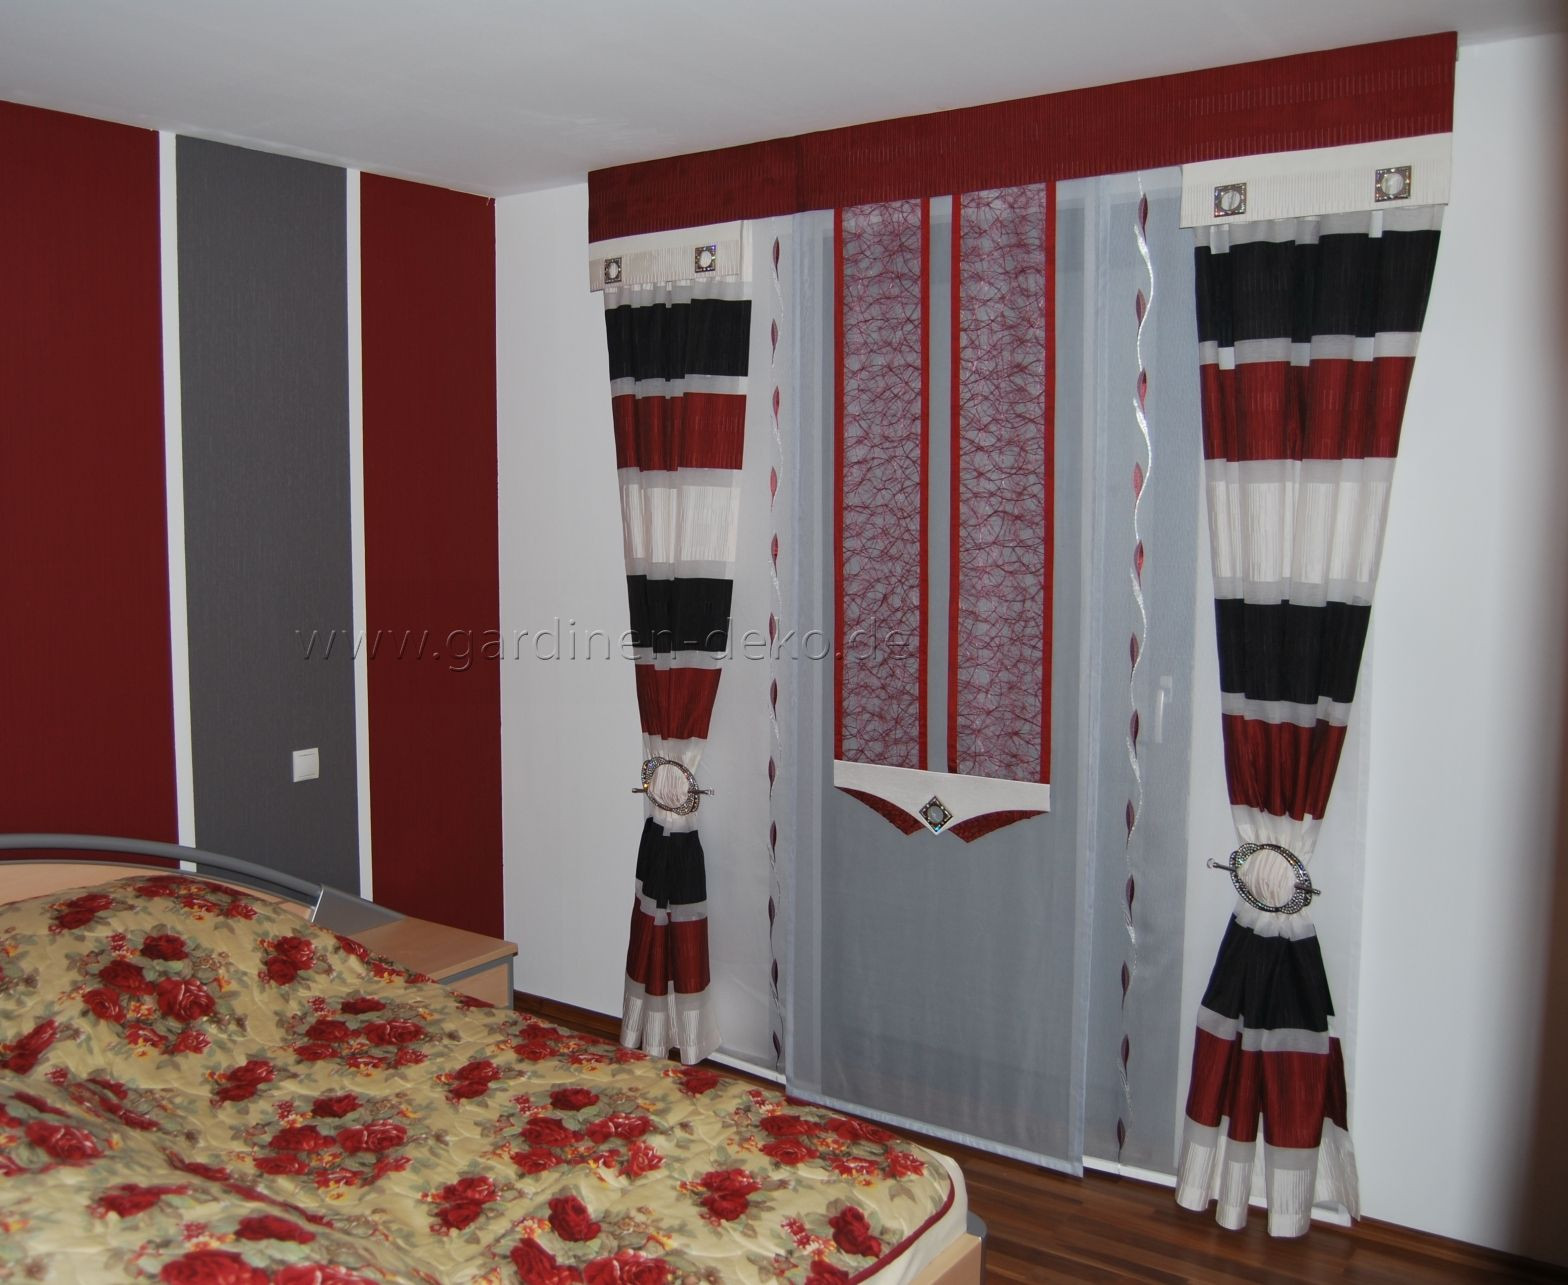 Schlafzimmer Gardinen
 Moderne Schlafzimmer Schiebegardine in rot weiß schwarz